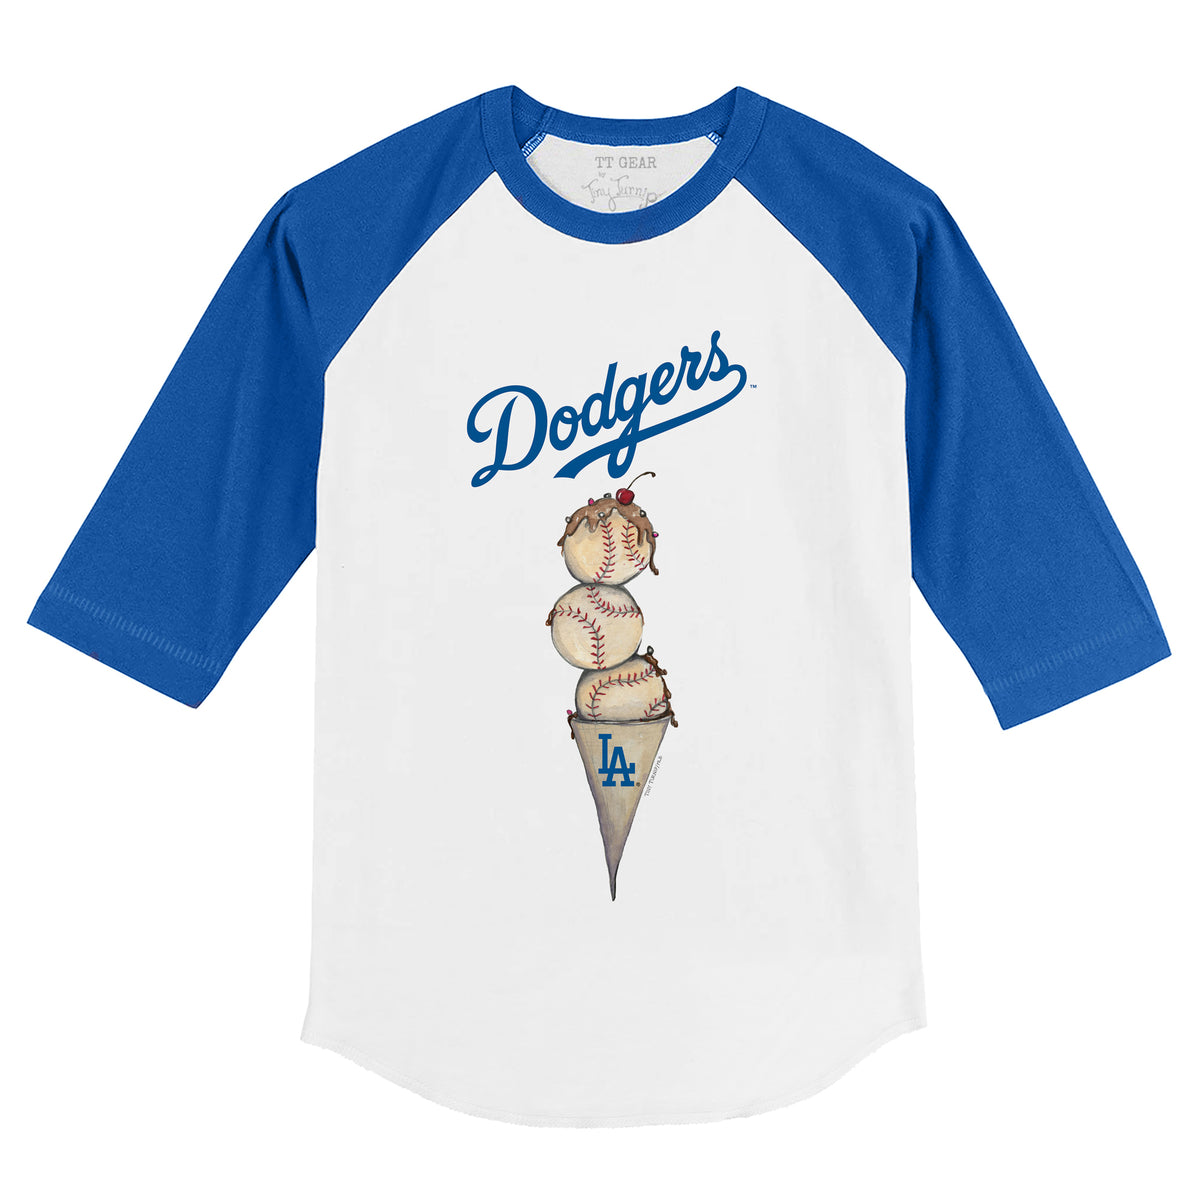 Los Angeles Dodgers Triple Scoop 3/4 Royal Blue Sleeve Raglan